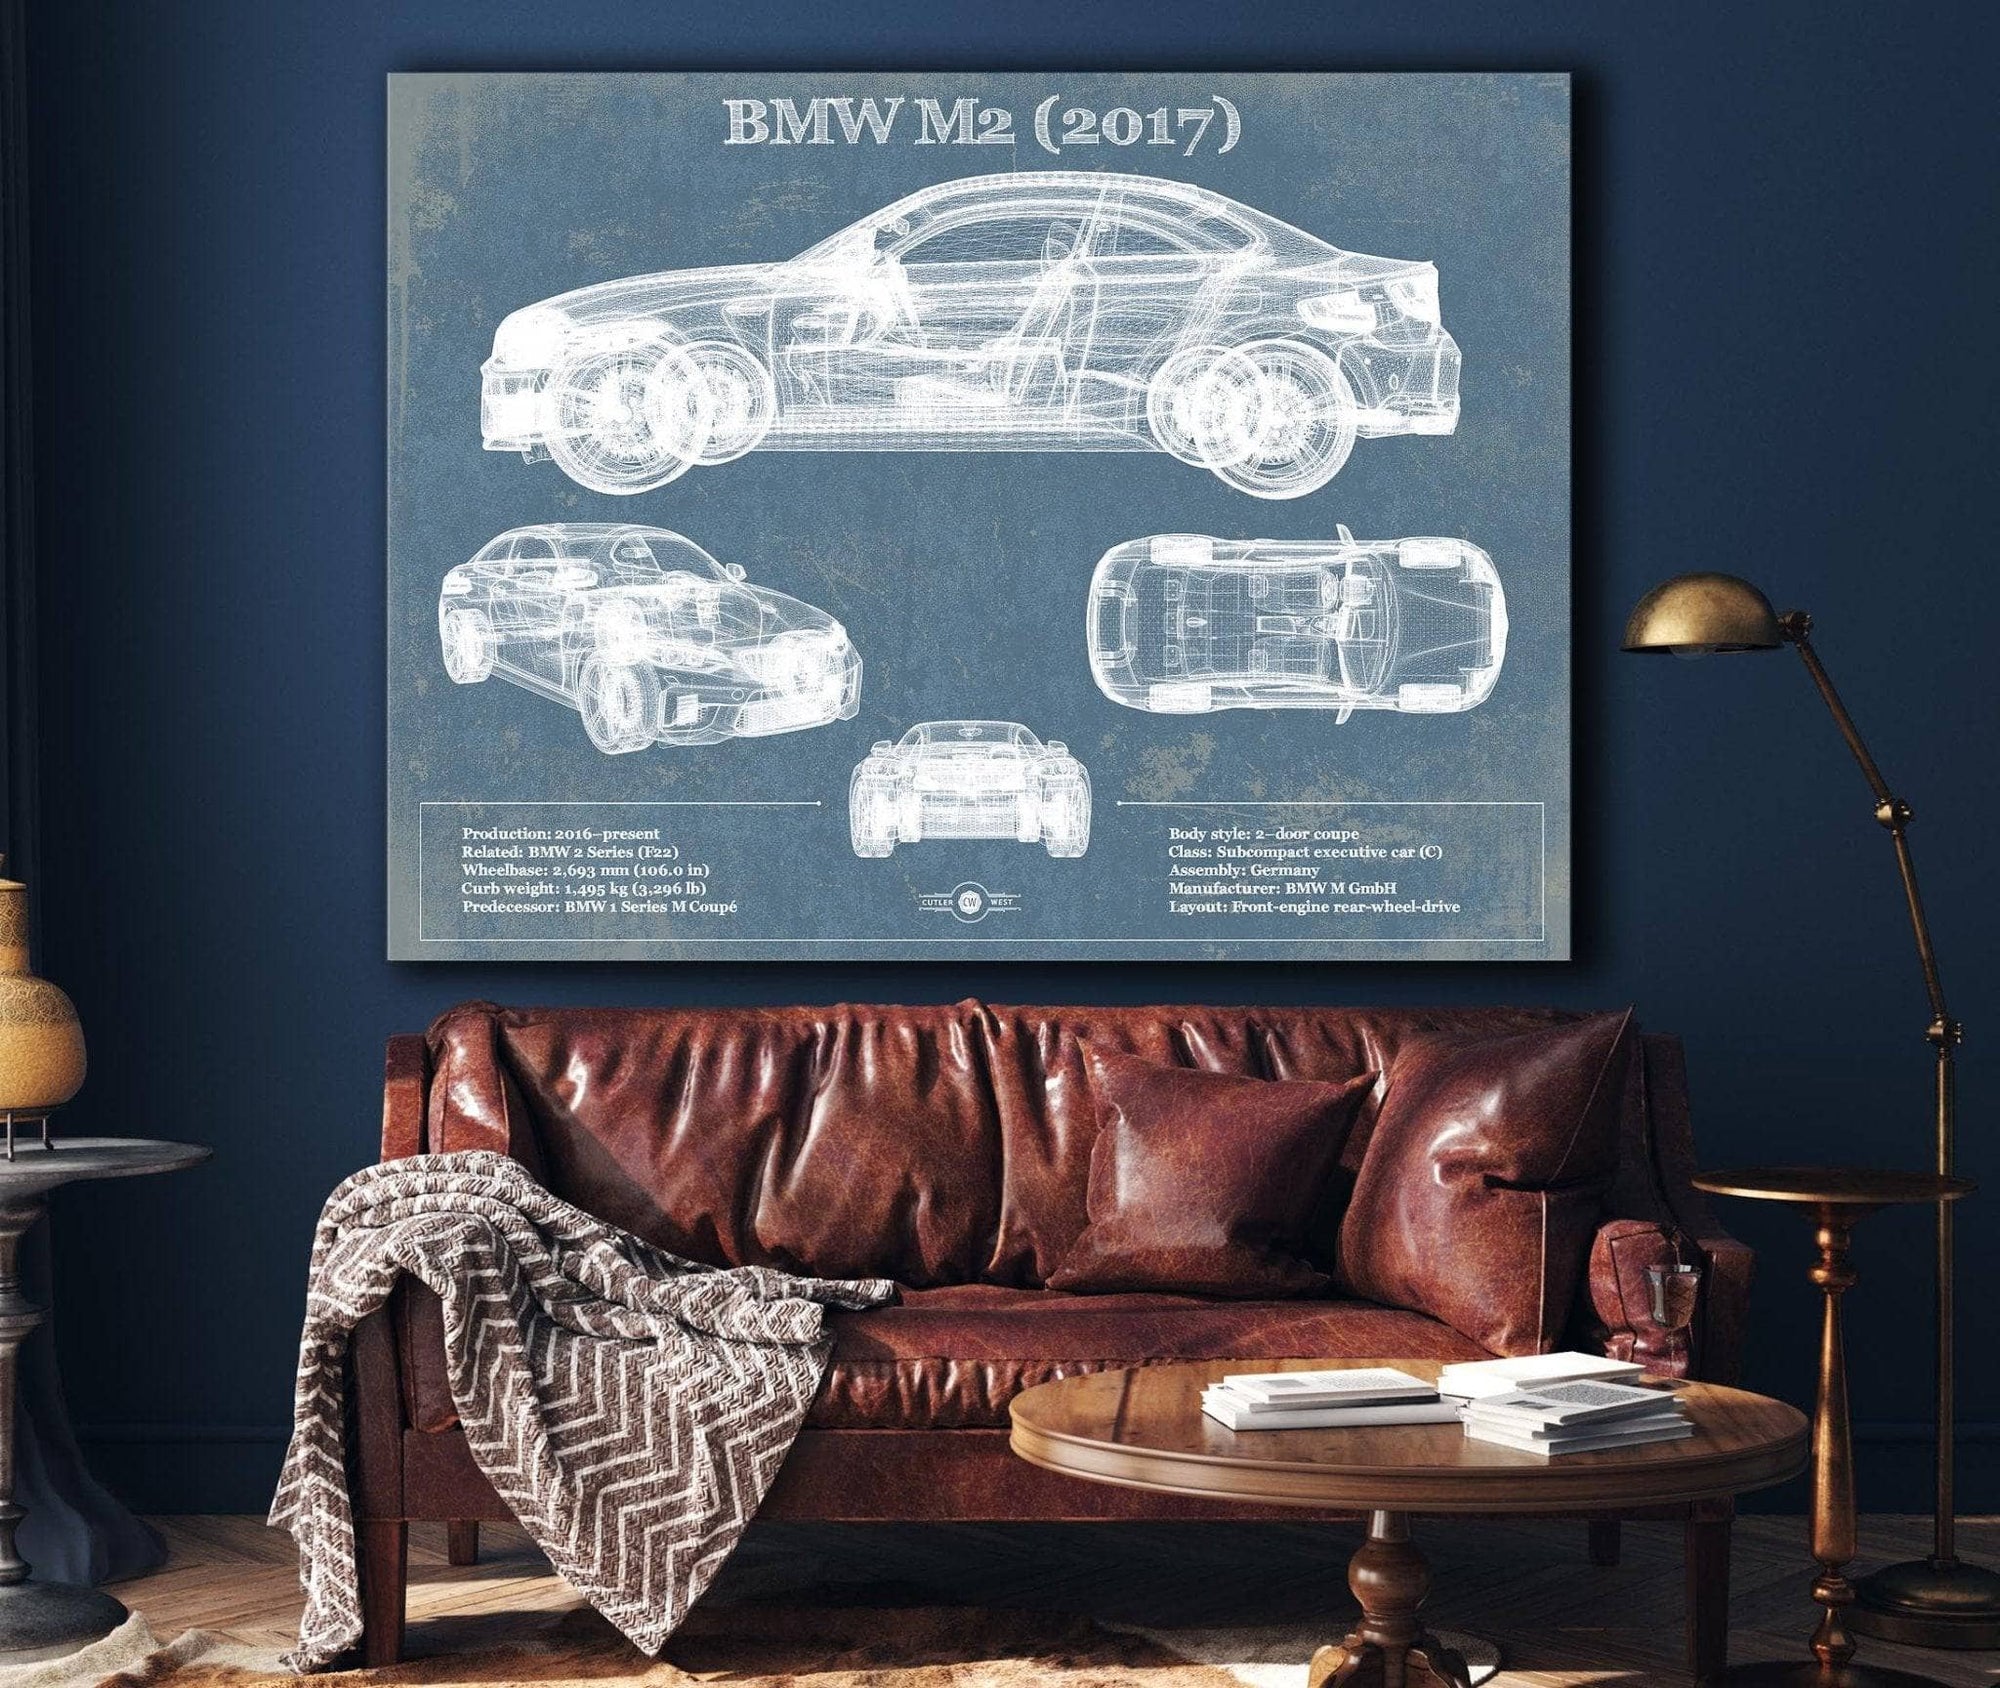 Cutler West Vehicle Collection BMW M2 2017 Blueprint Vintage Auto Print